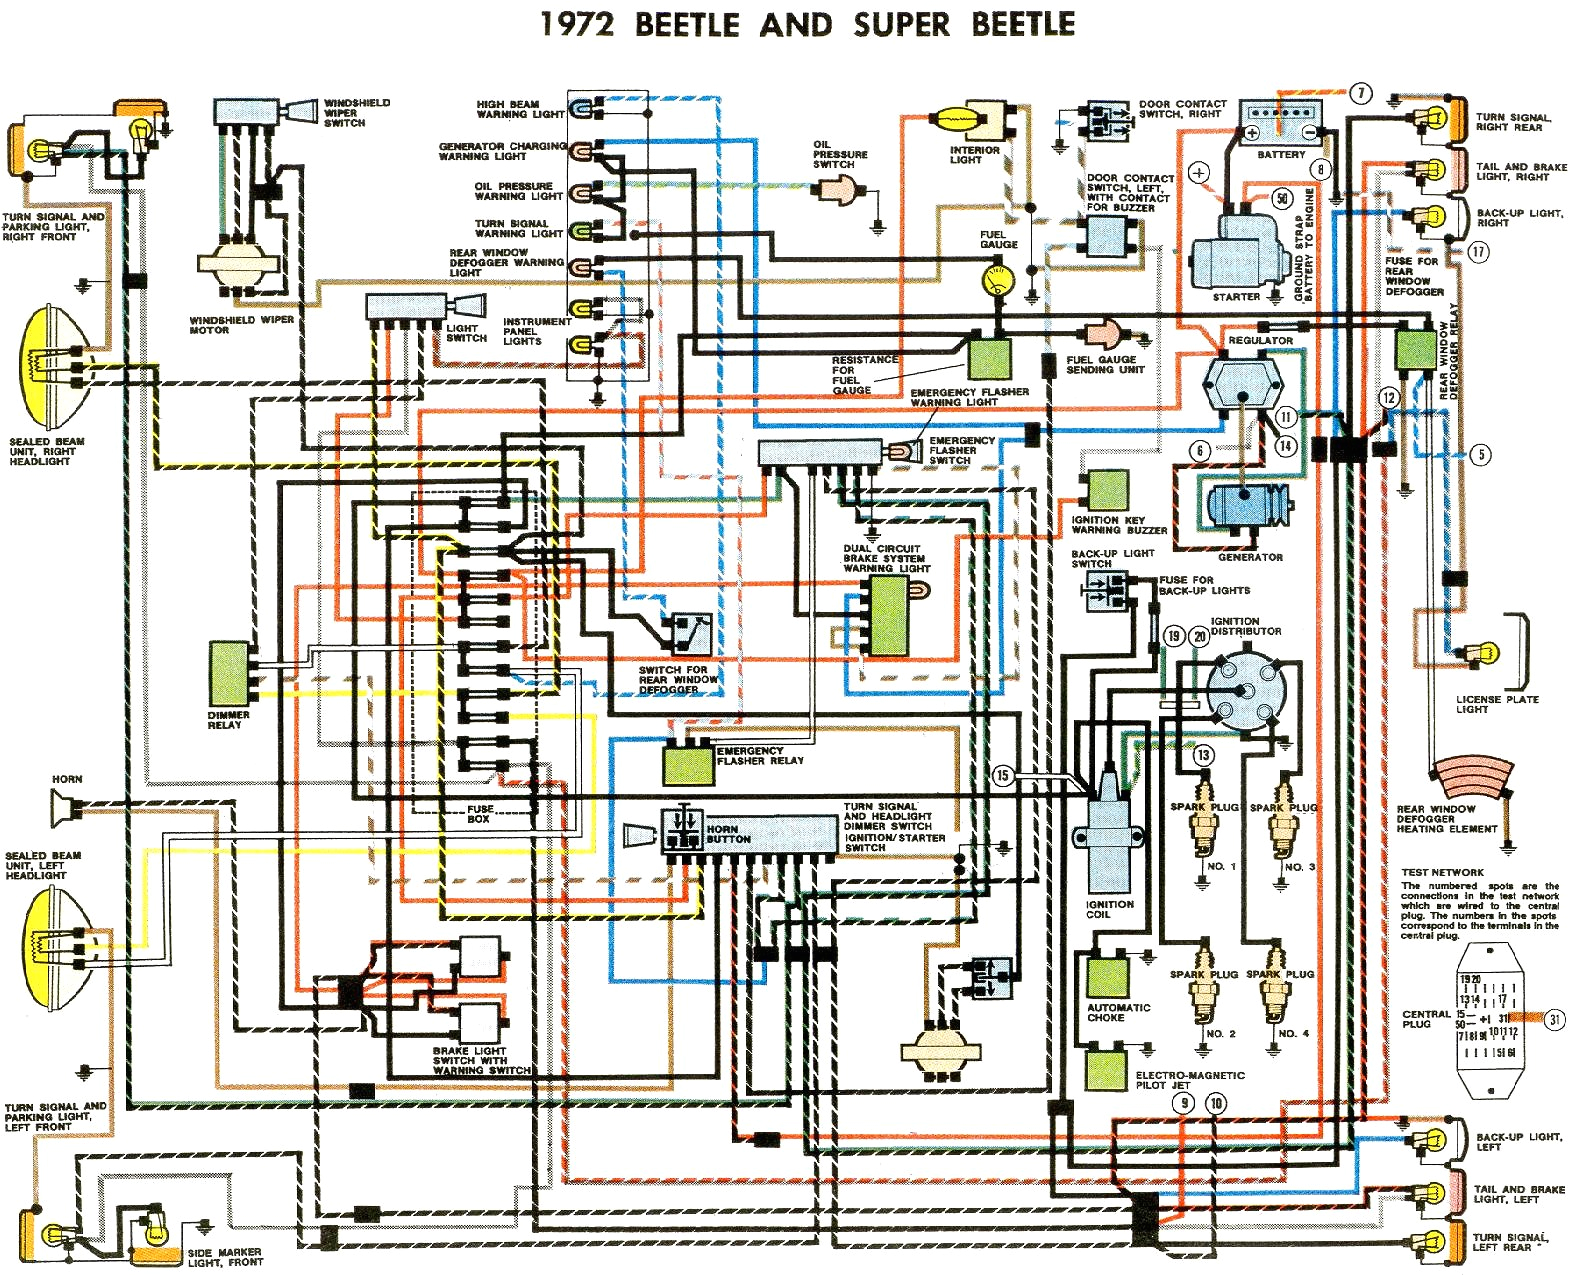 1972 beetle wiring diagram